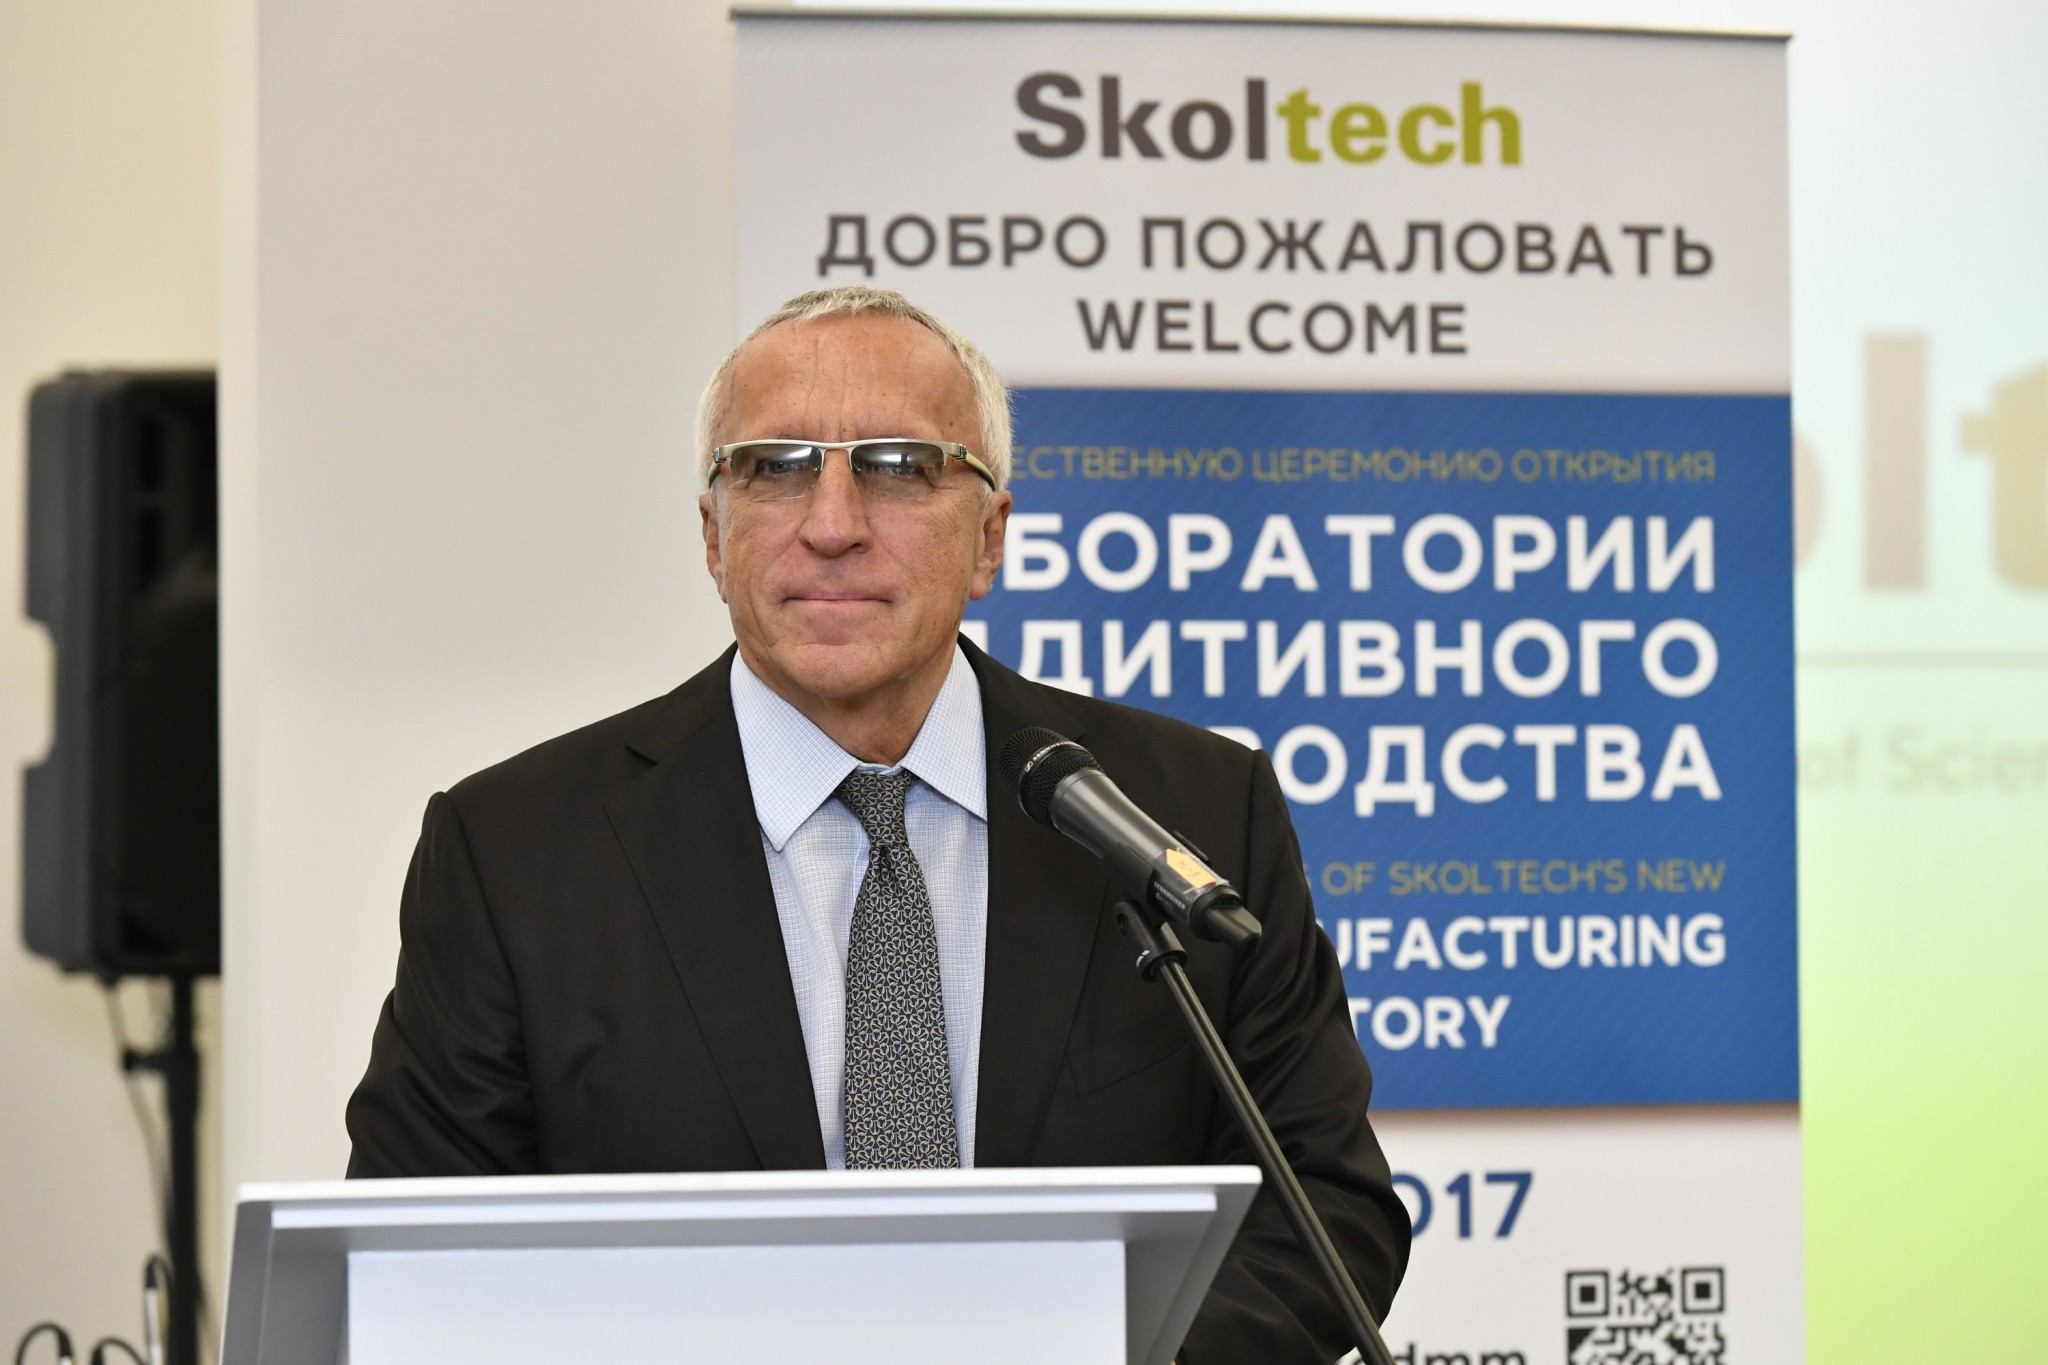 Skoltech President Alexander Kuleshov. Photo: Skoltech.